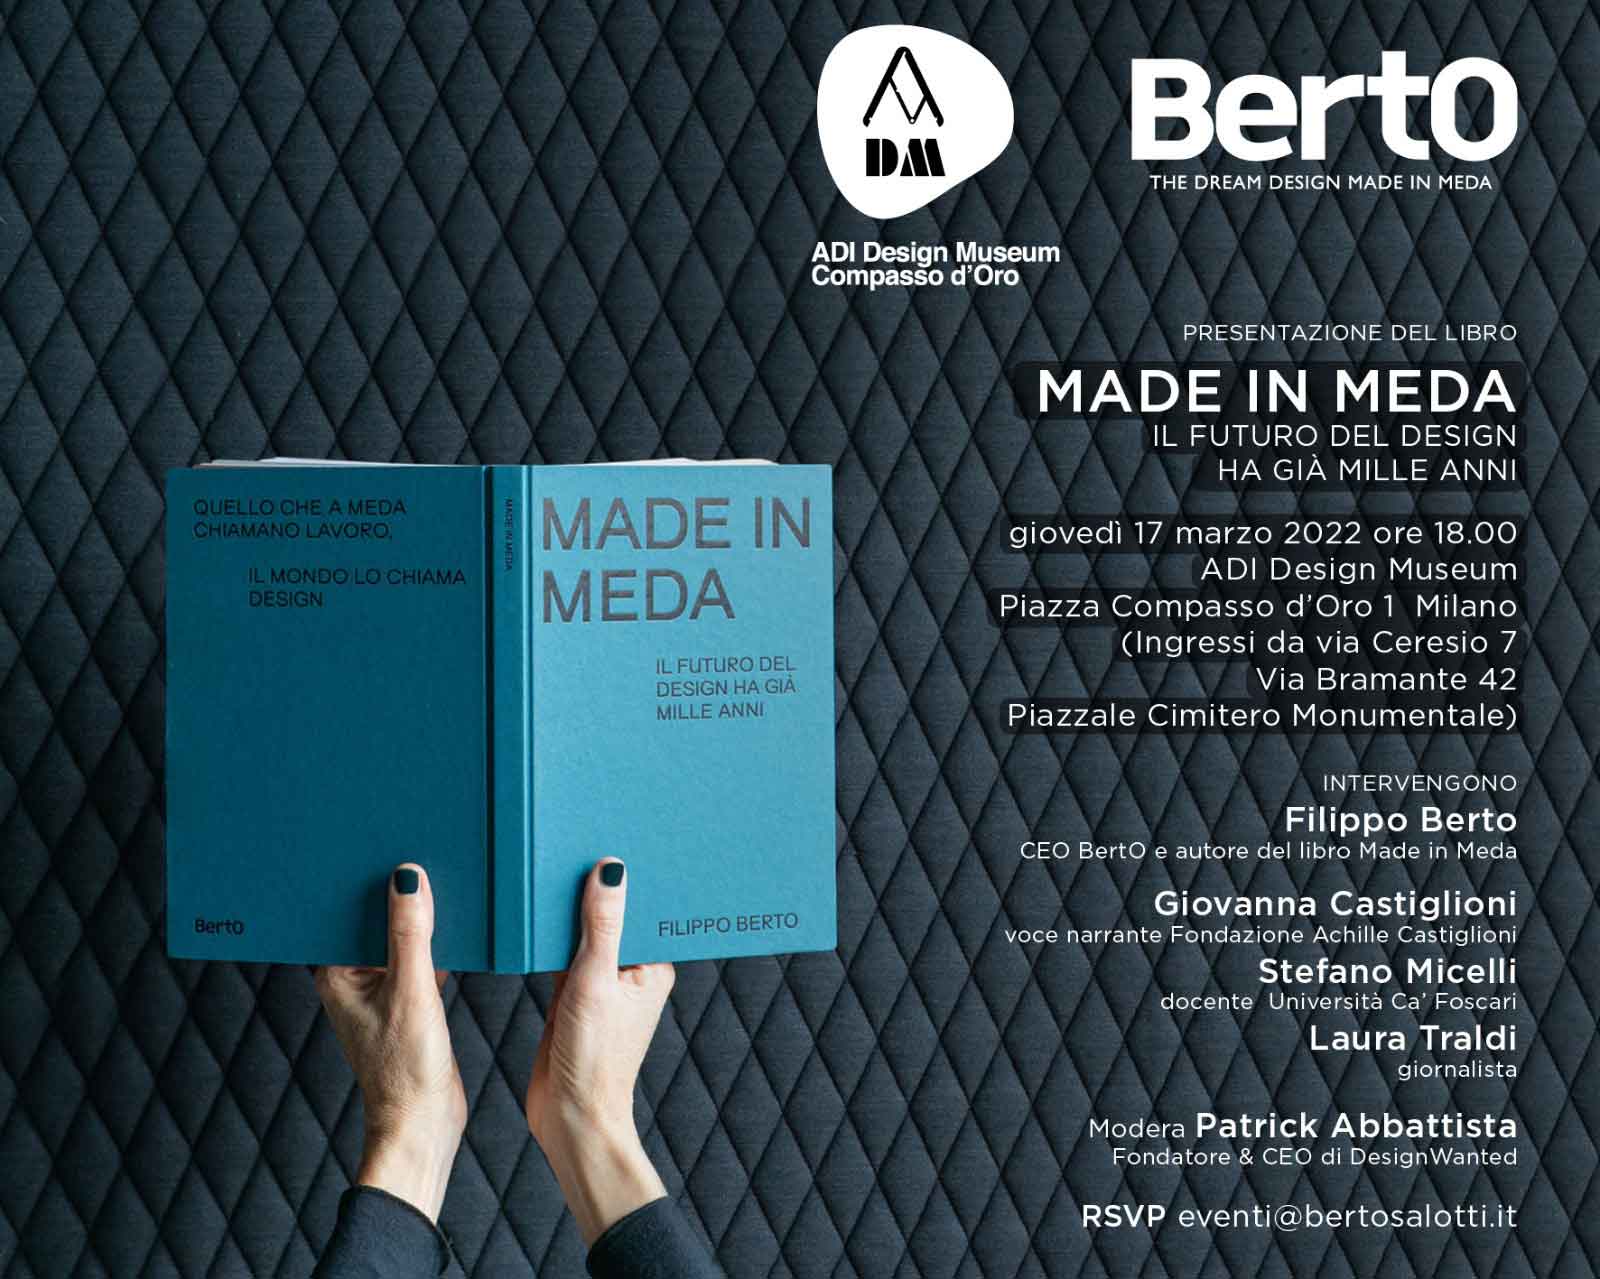 Invito presentazione Made in Meda - ADI Design Museum Milano